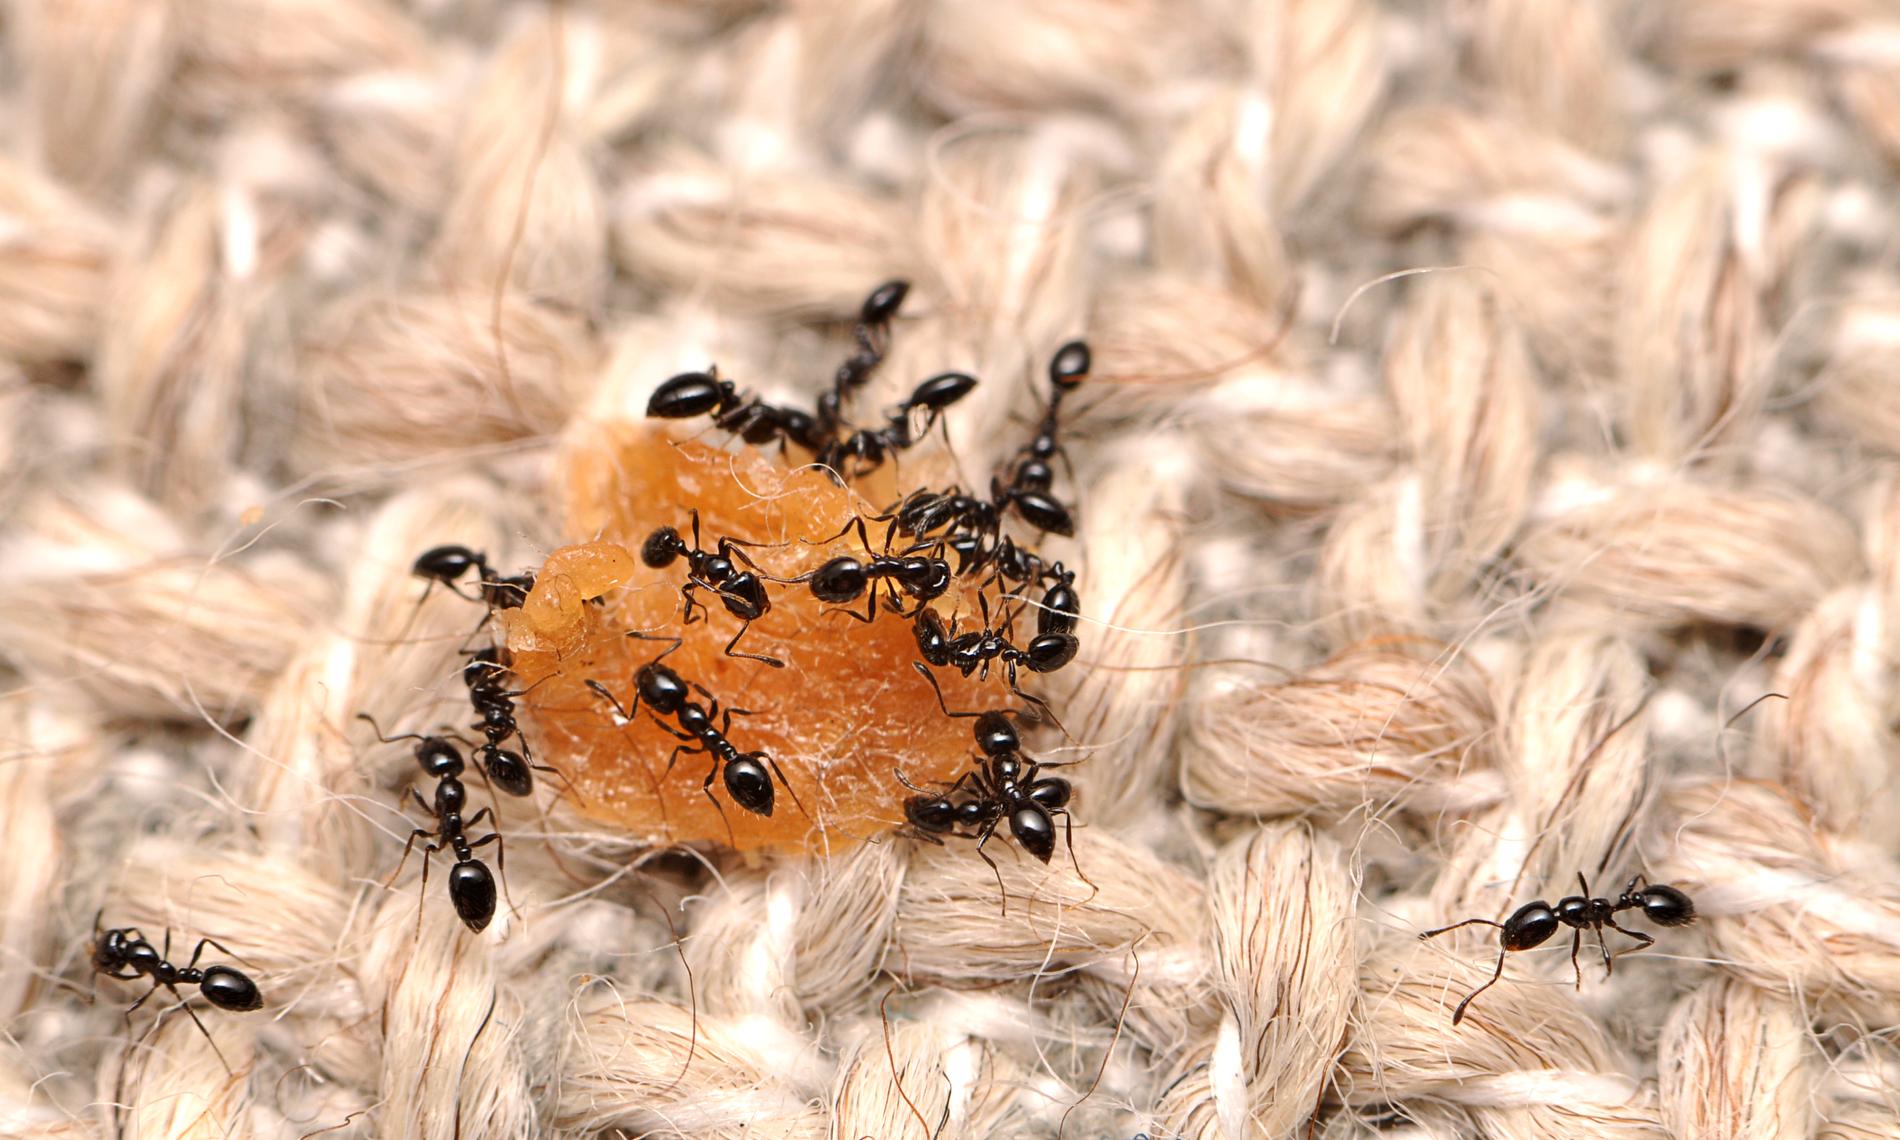 Myror som festar loss på en matsmula, inte helt ovanligt i våra hem. Arkivbild.